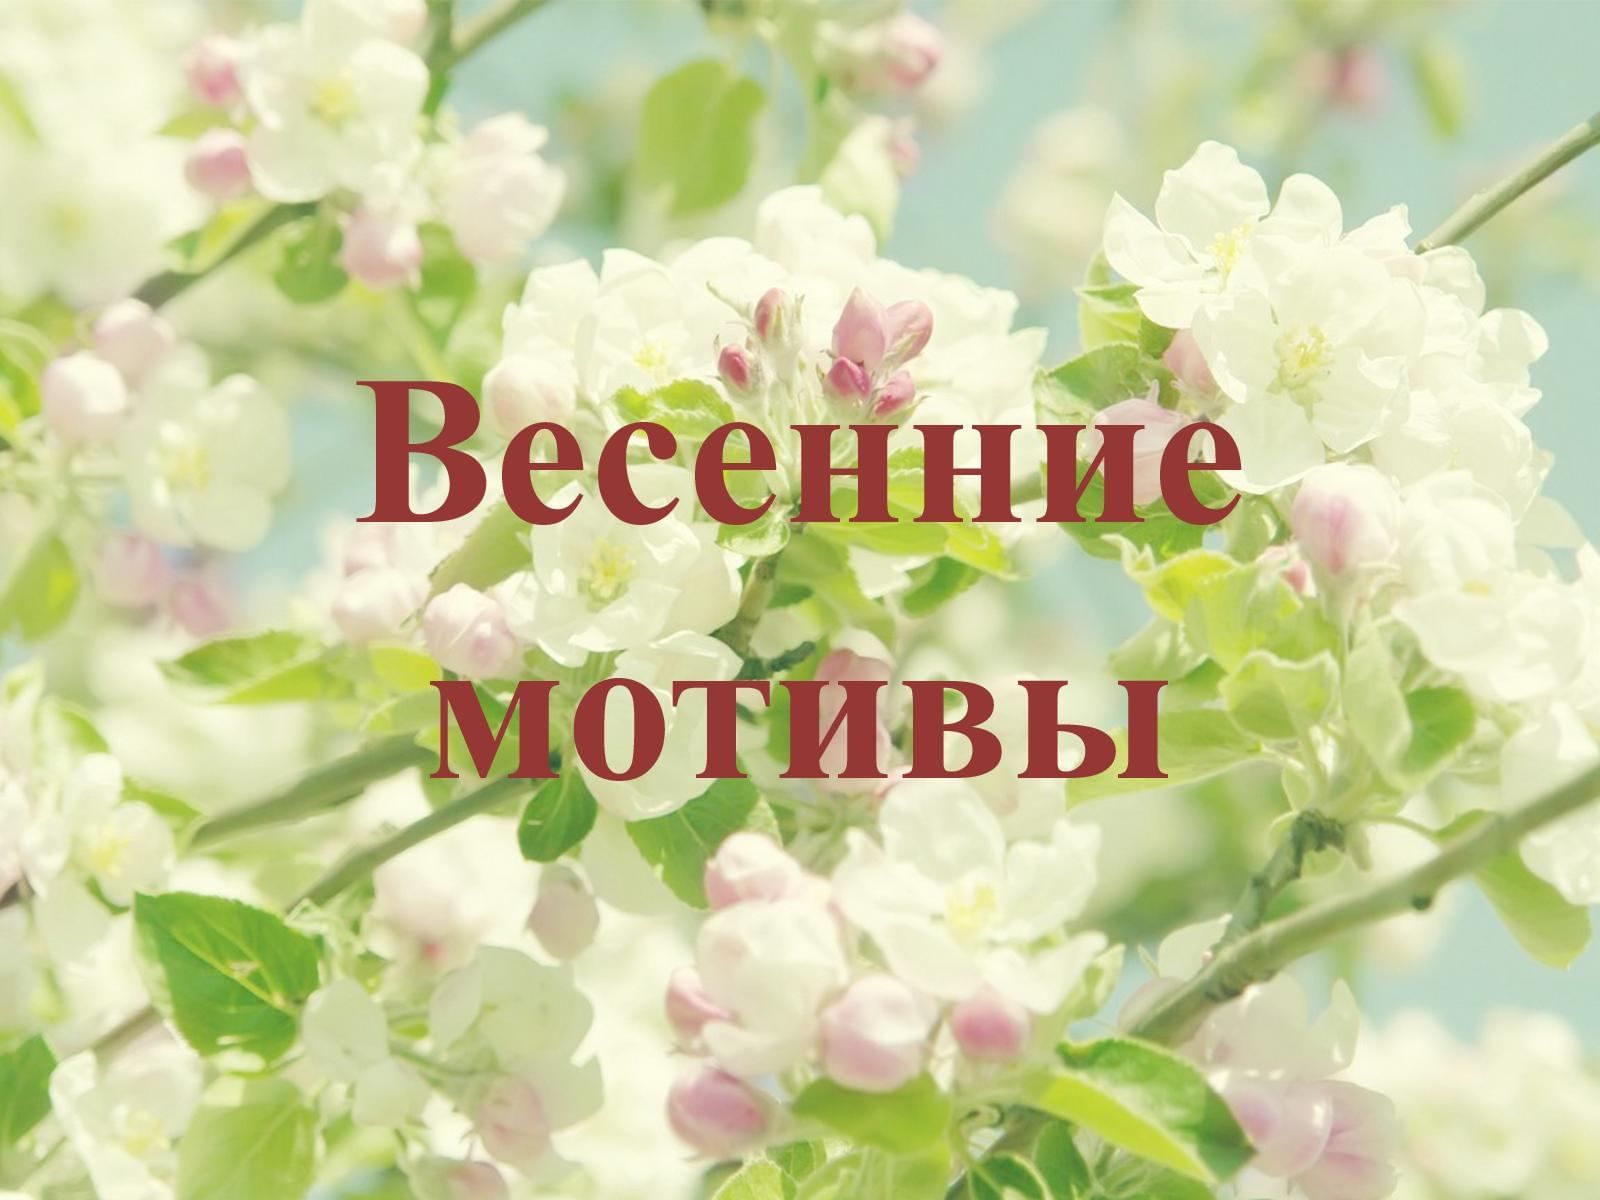 Весенние мотивы» 2021, Московская область — дата и место проведения,  программа мероприятия.